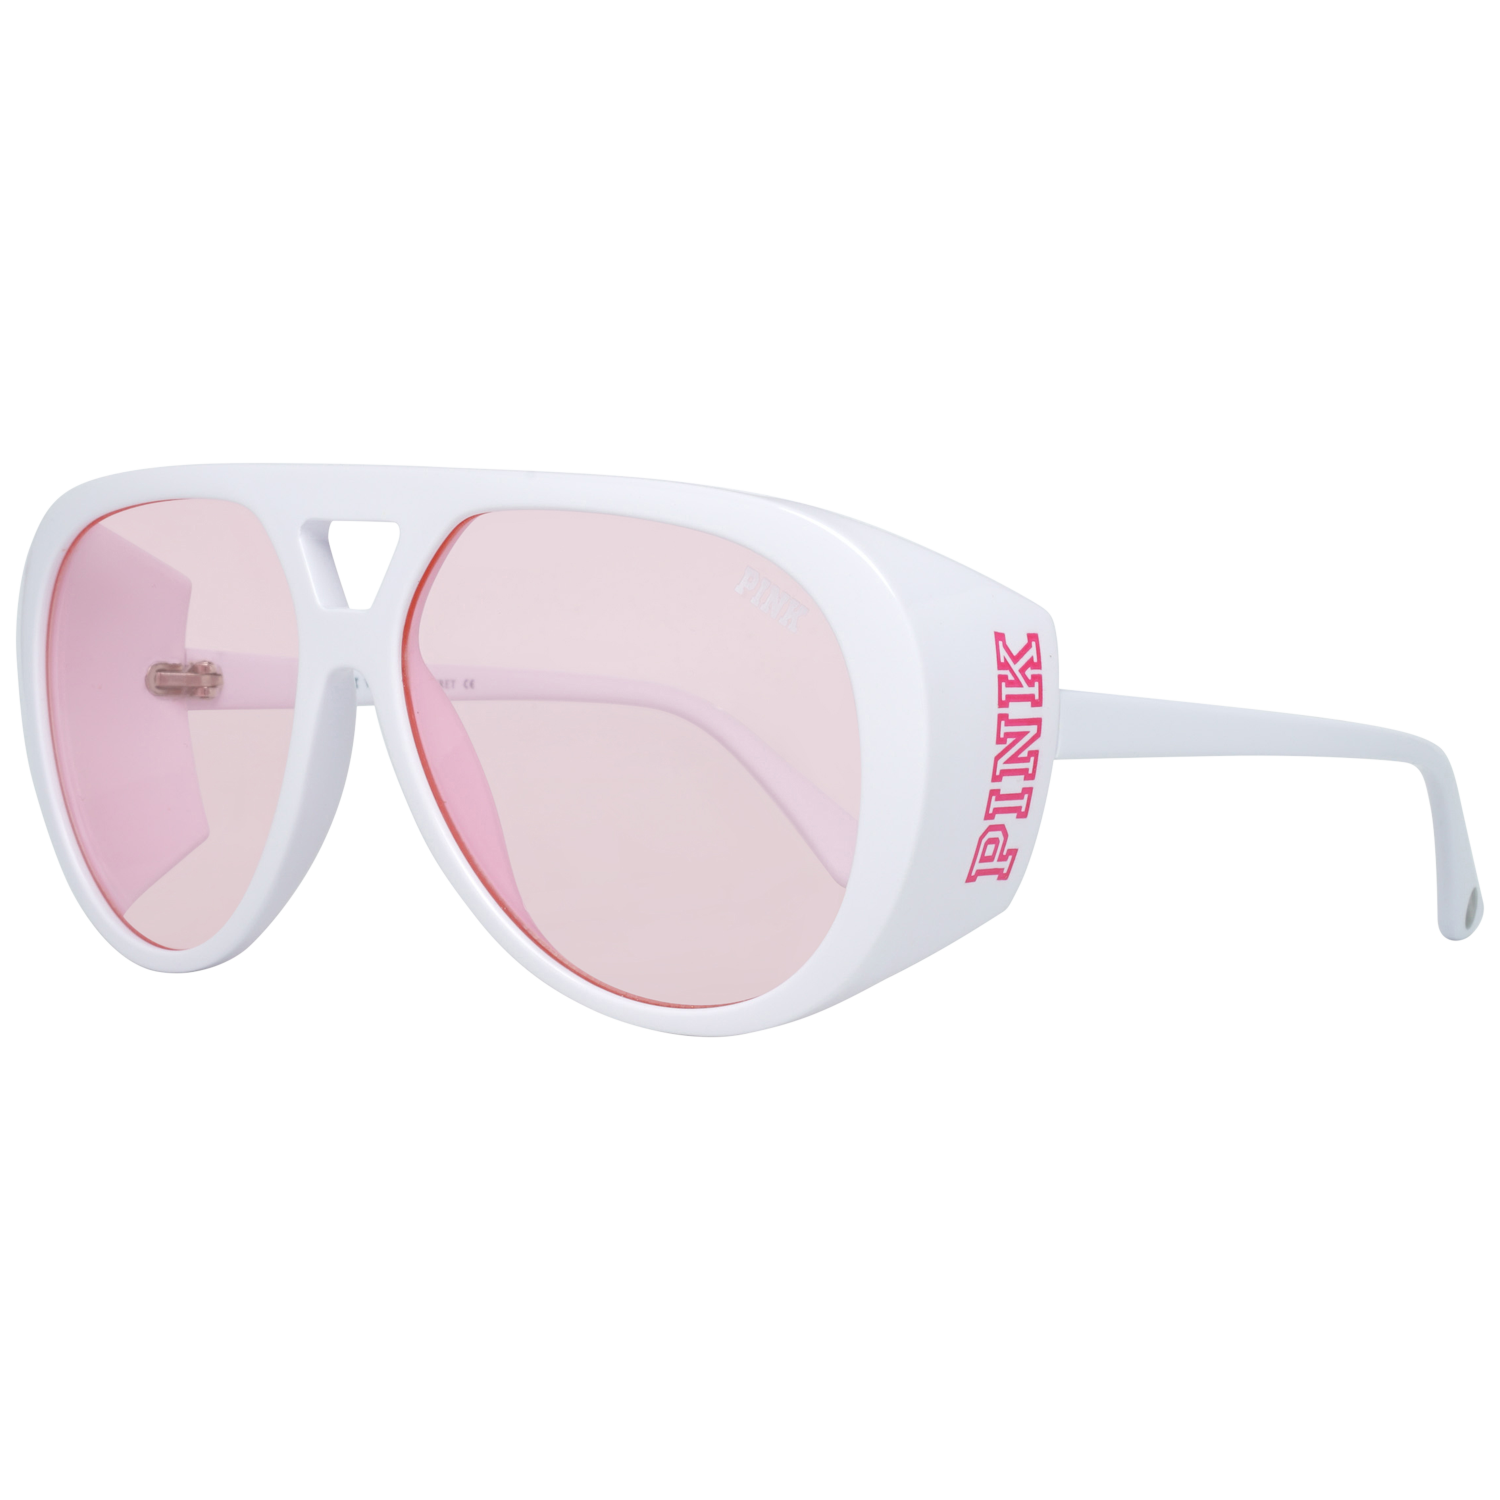 Victoria's Secret Pink Sunglasses PK0013 25T 59 White